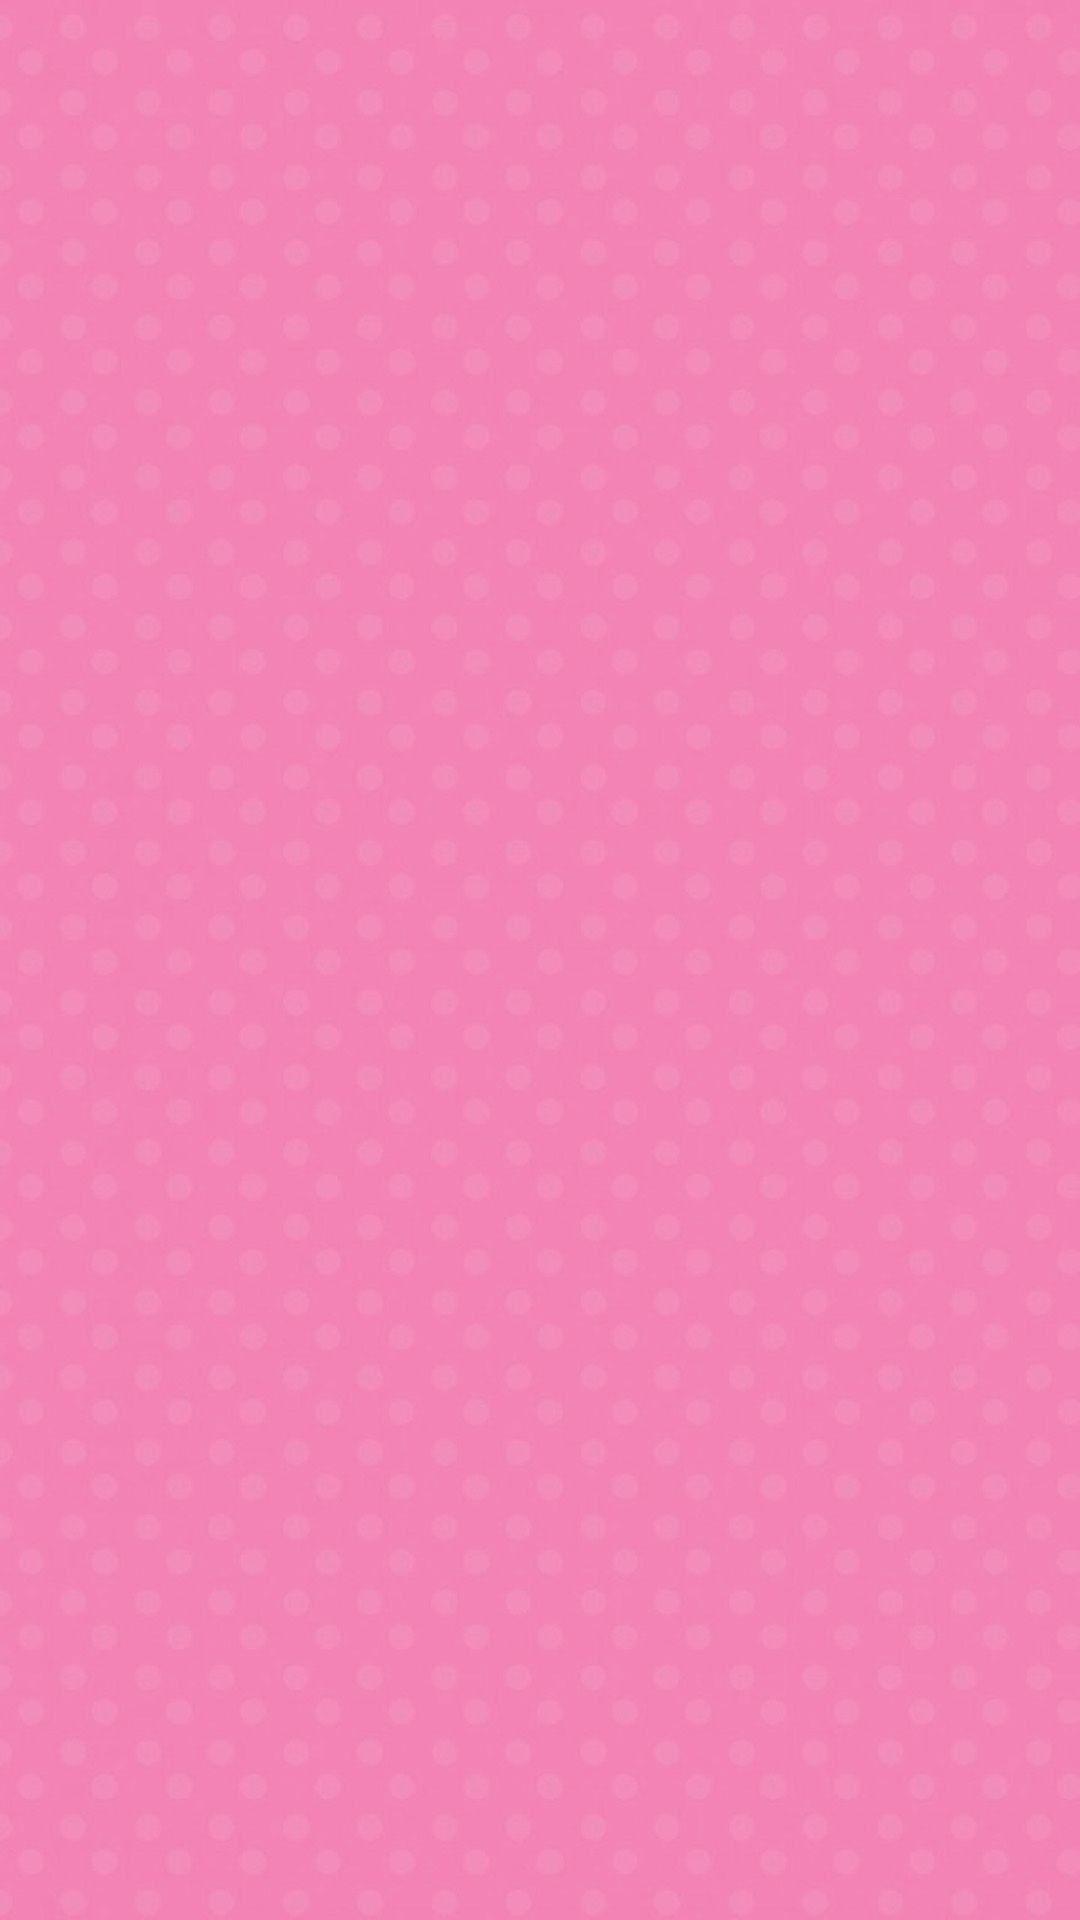 Hình nền màu hồng dễ thương 1080x1920 dành cho iPhone